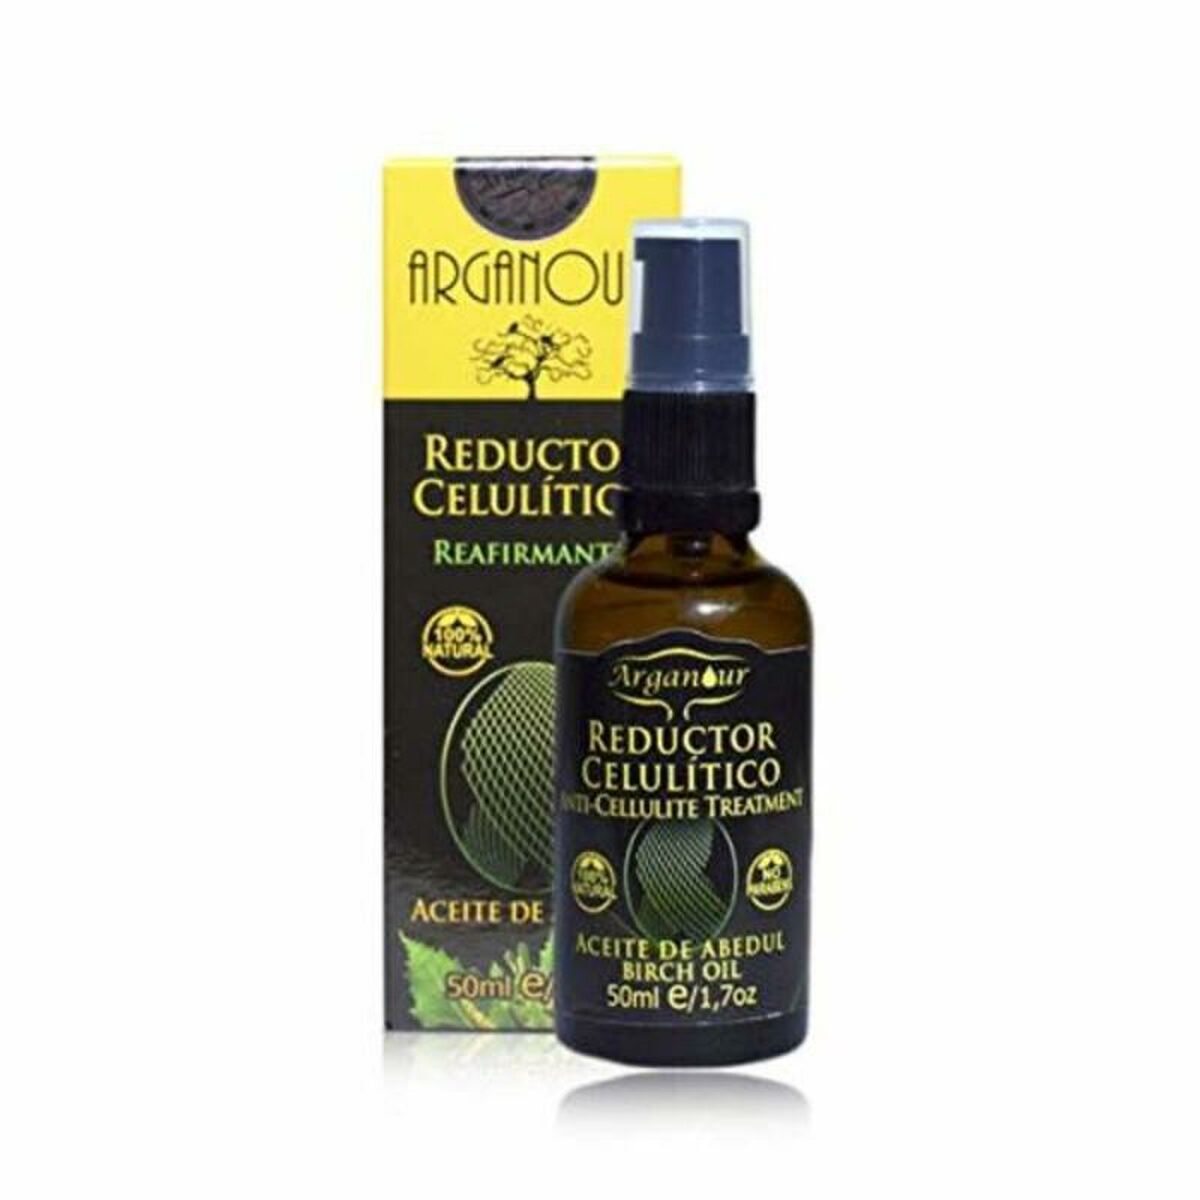 Proticelulitsko kremno arganour brezovo olje (50 ml)